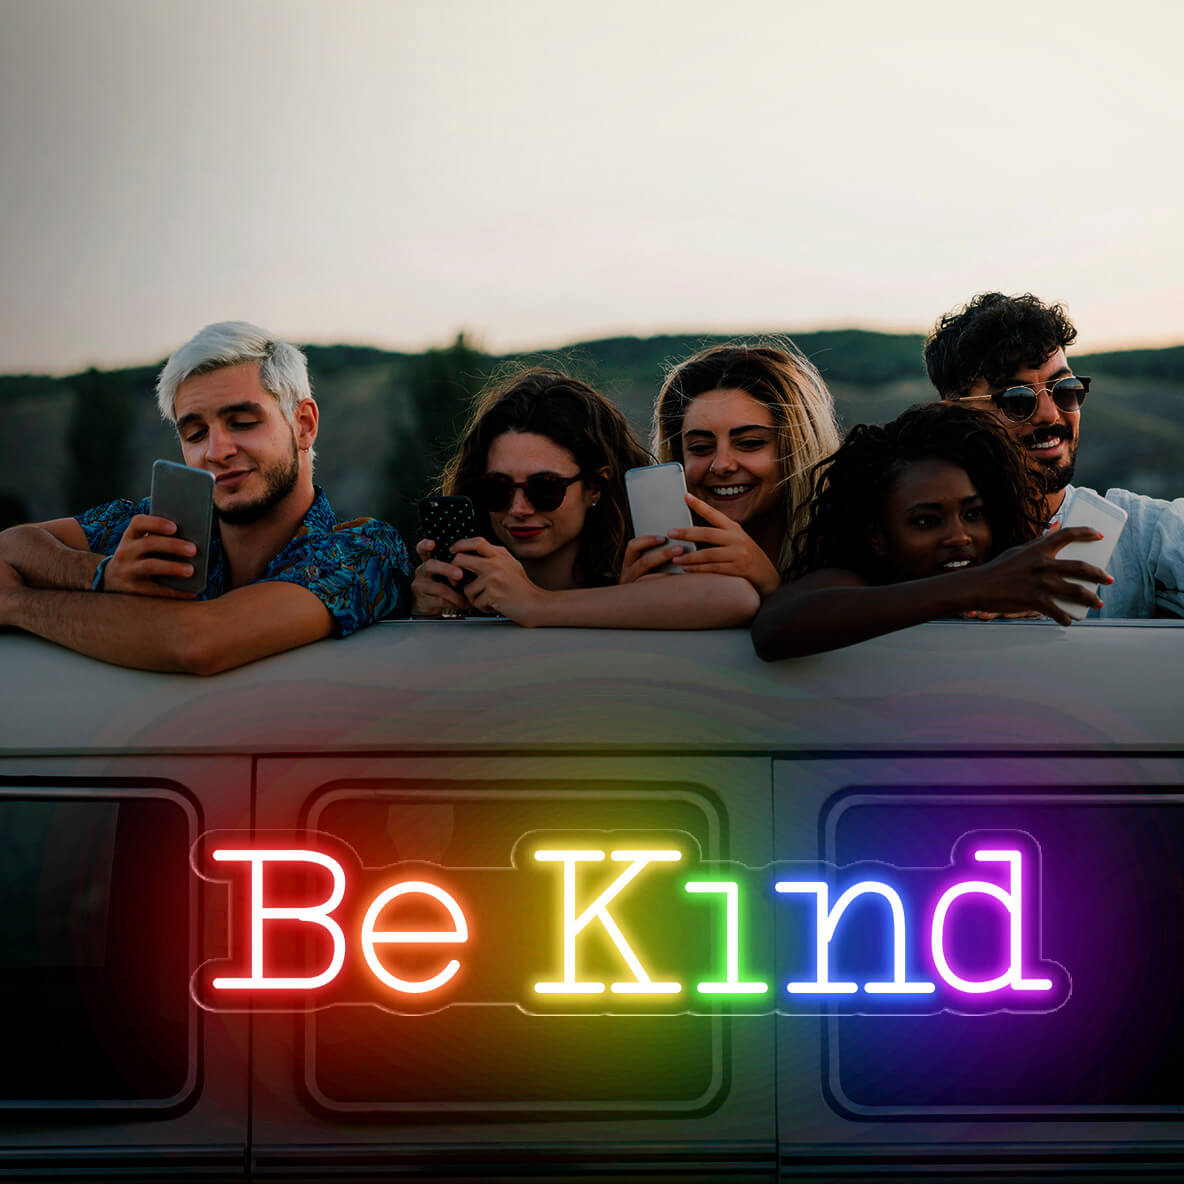 Be Kind Neon Sign Led Light LGBT 3